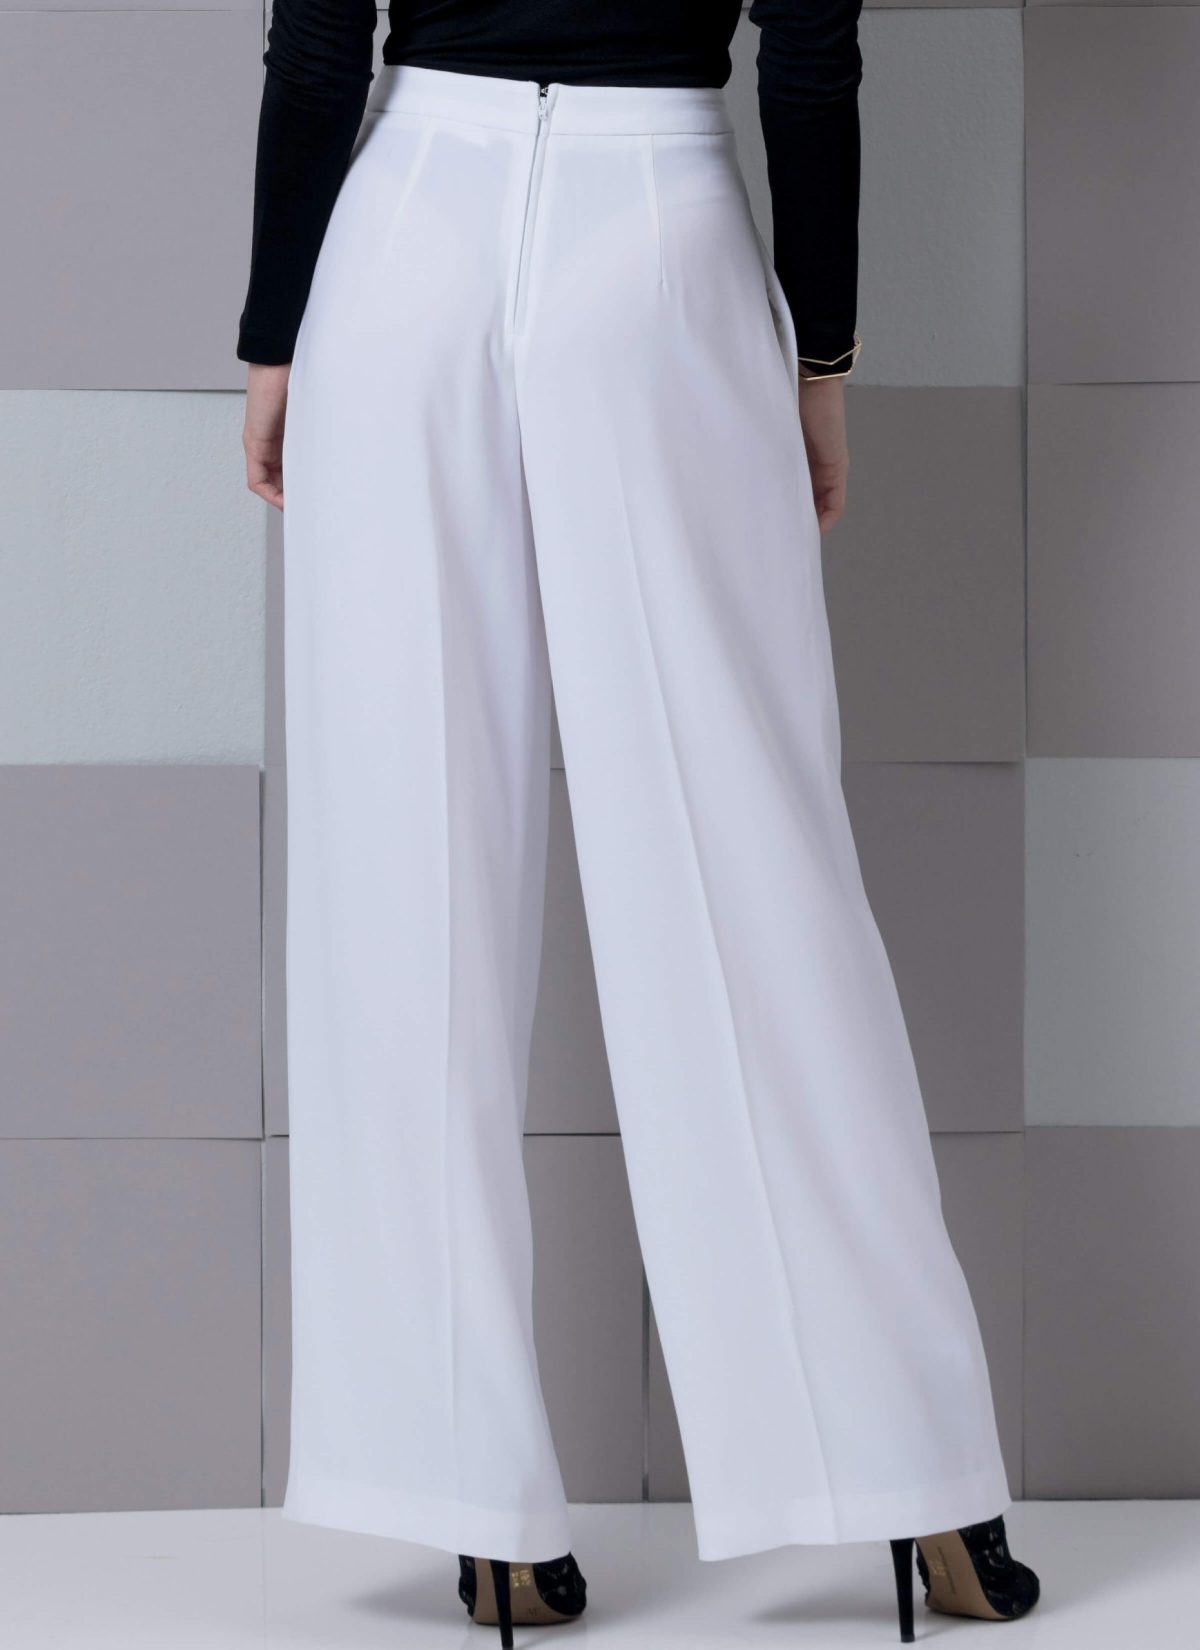 Vogue Patterns V9302 Misses' Pants